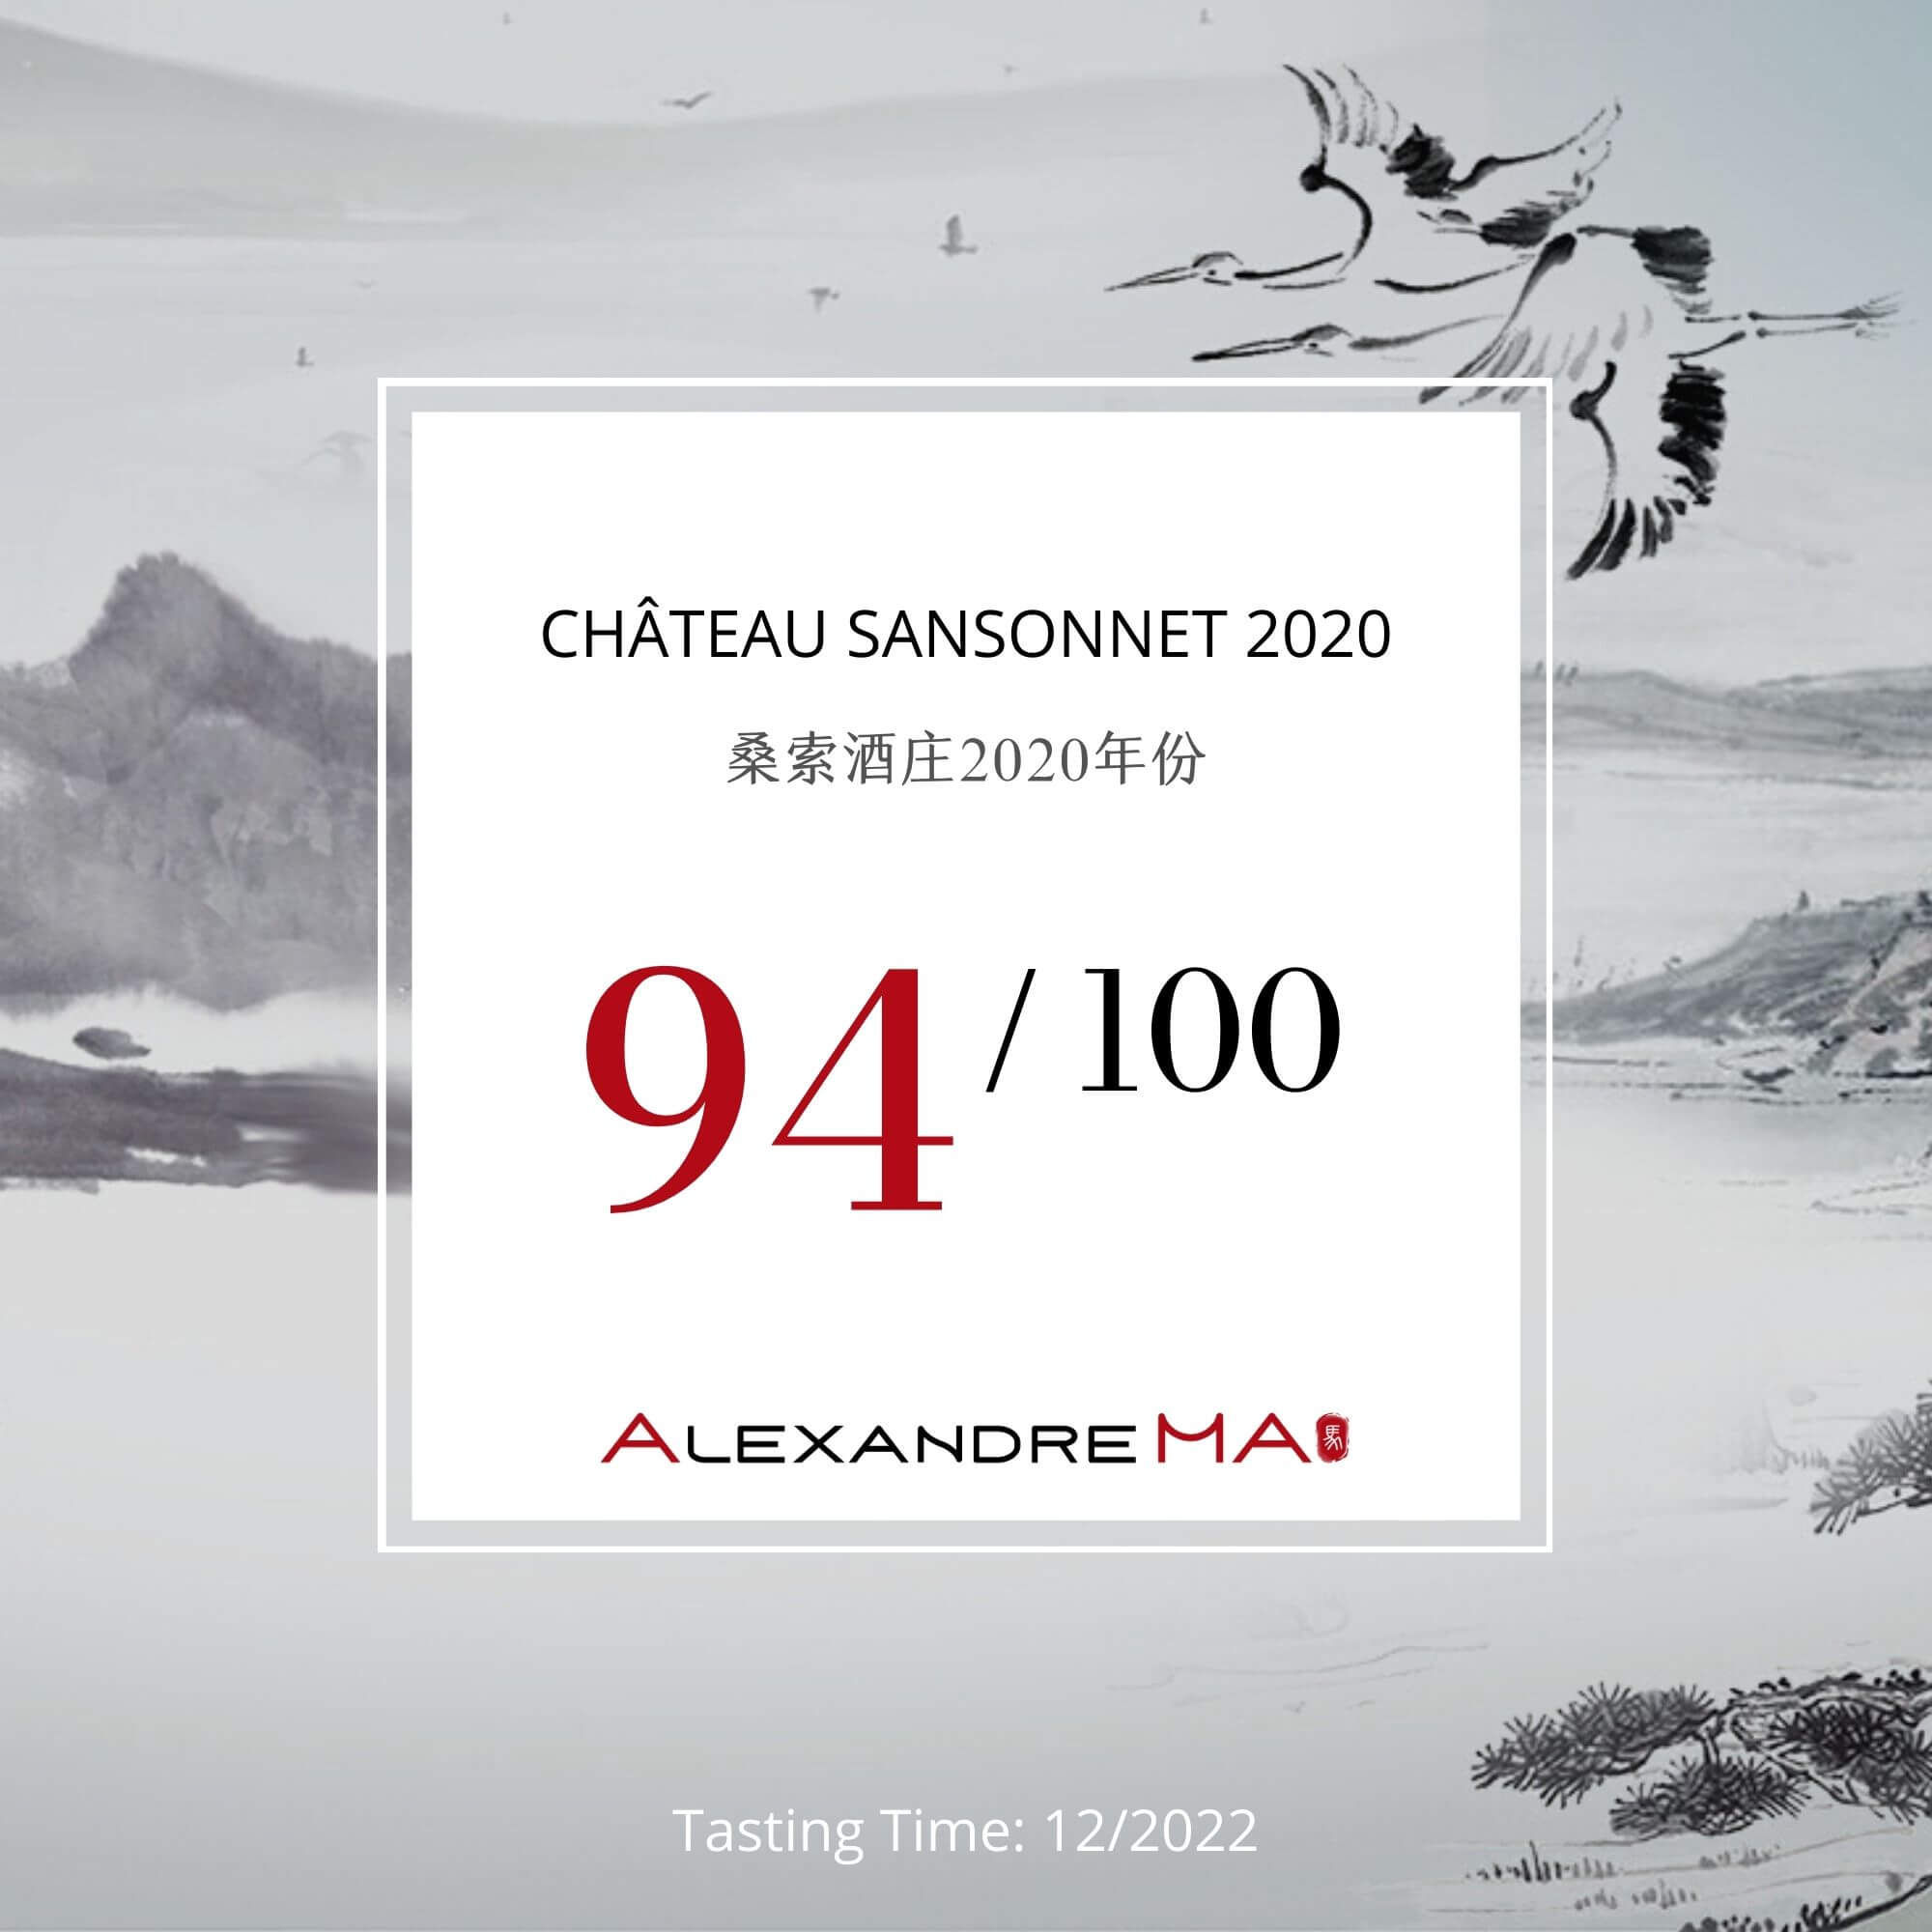 Château Sansonnet 2020 - Alexandre MA